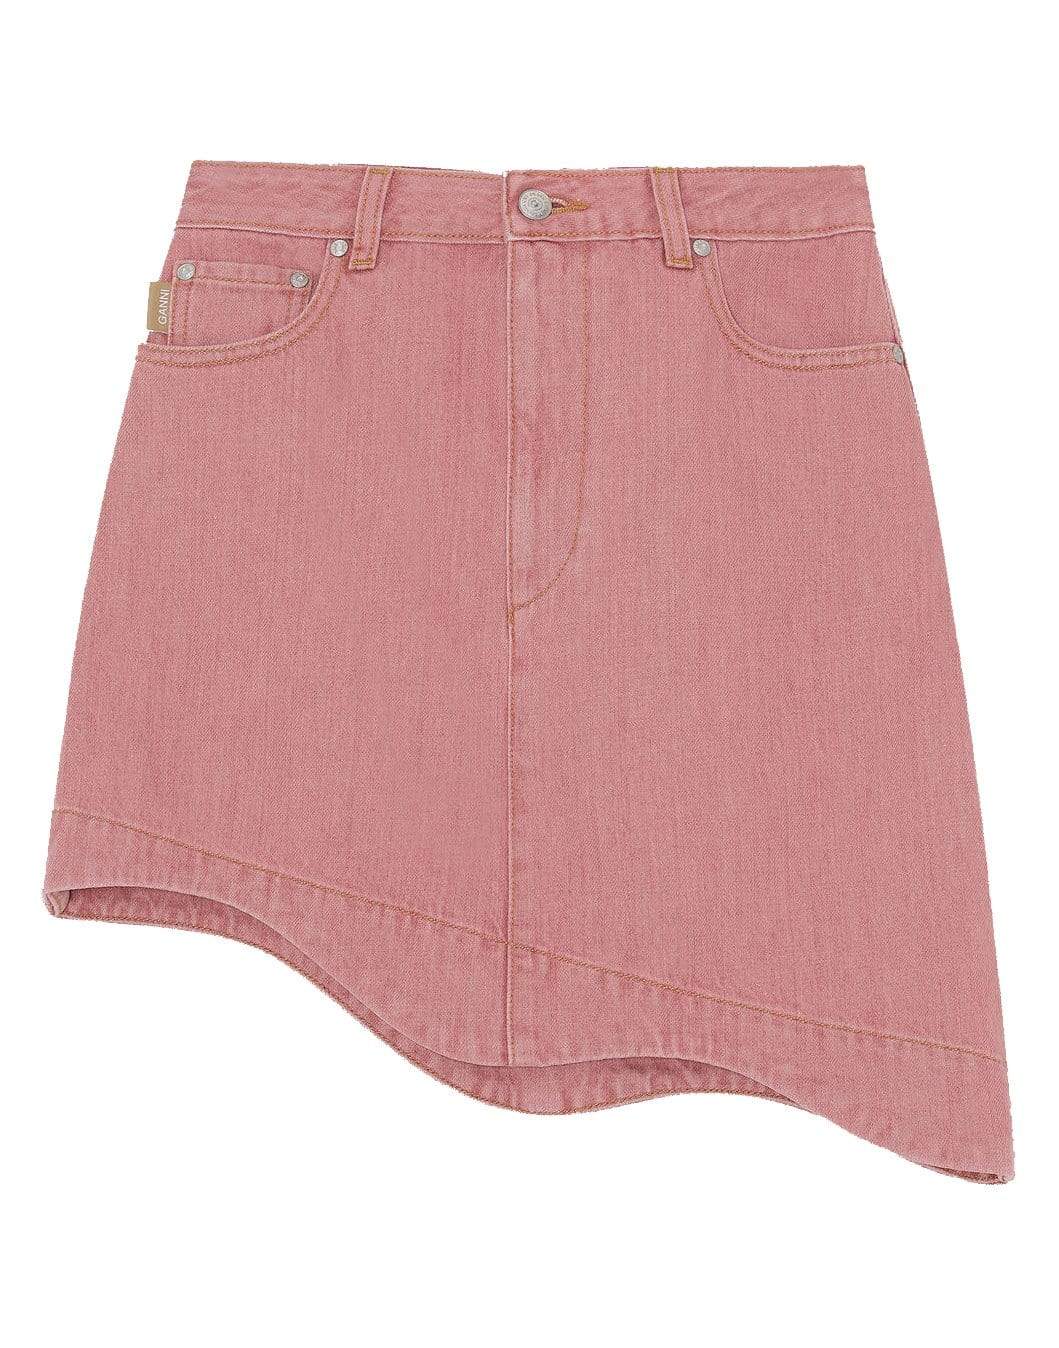 Pink Denim High-Waisted Asymmetrical Mini Skirt CLOTHINGSKIRTMINI GANNI   